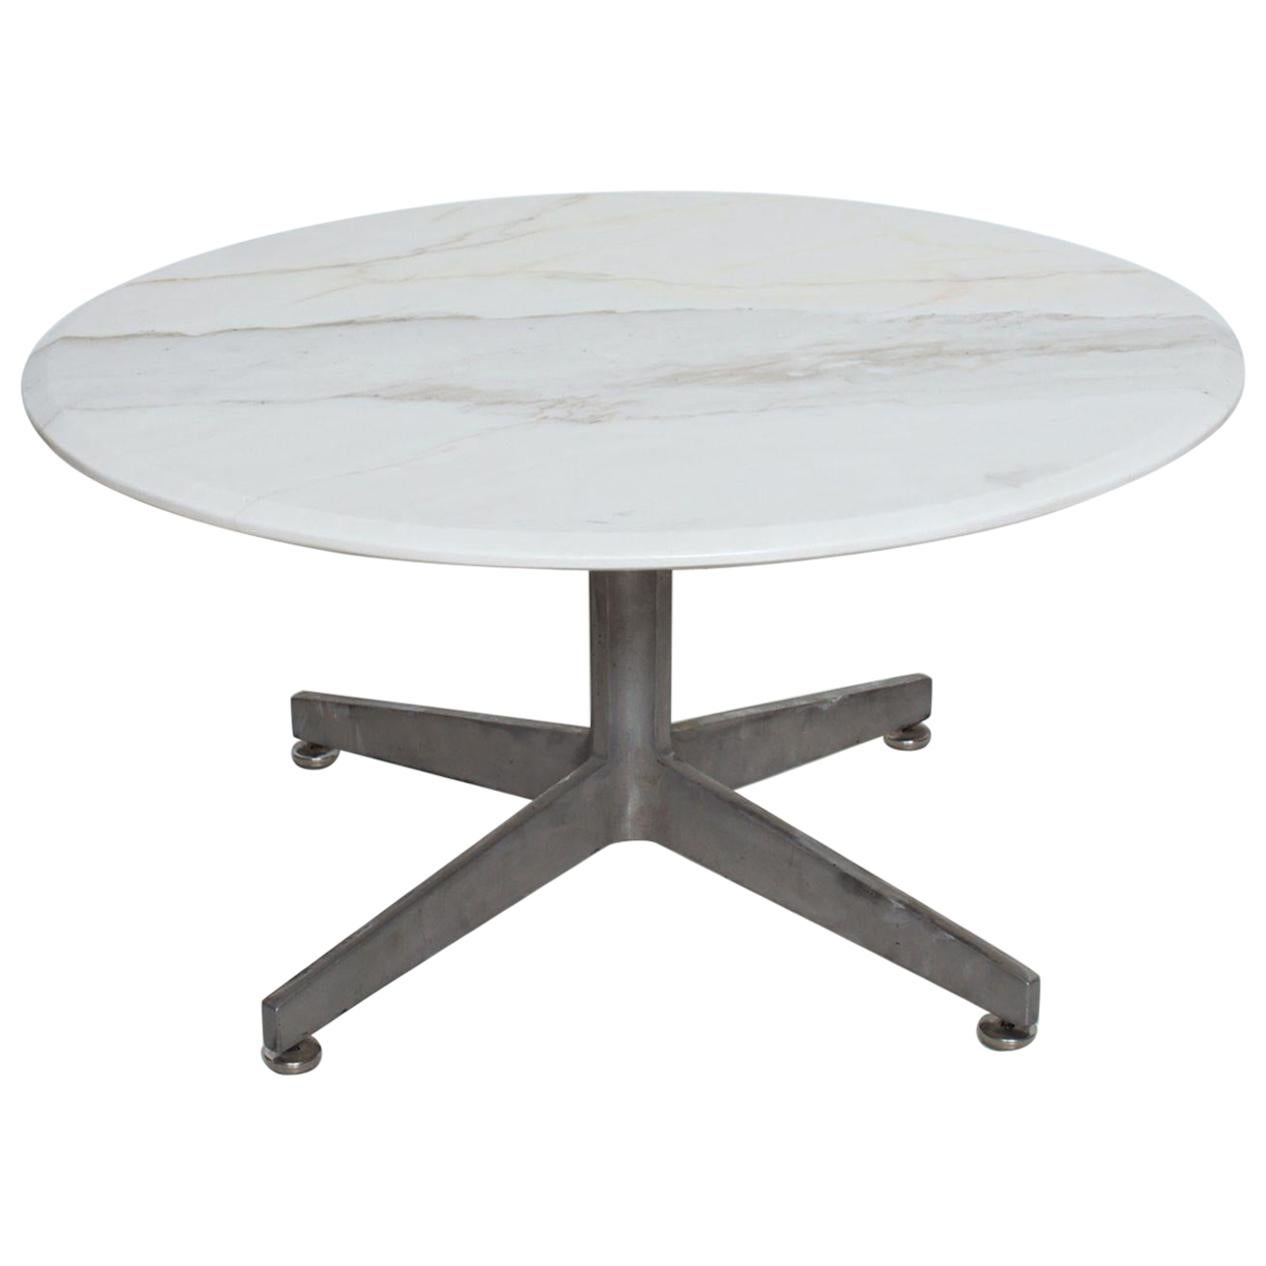  Table basse ronde en marbre avec base en étoile en aluminium, style Knoll, années 1960